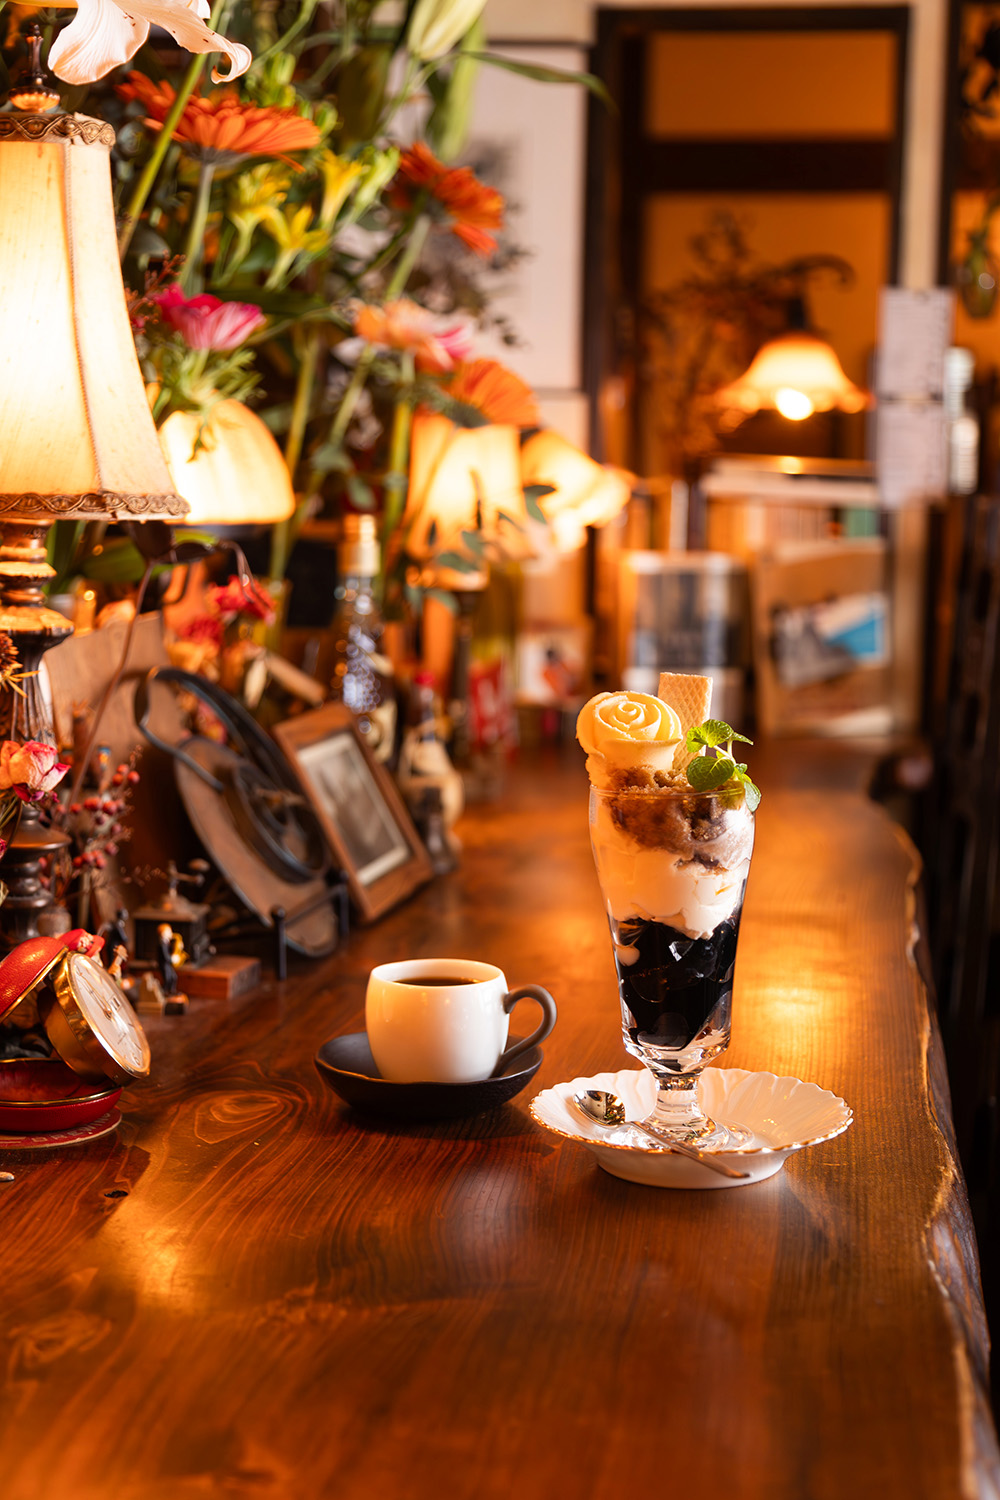 バラアイスが優美な珈琲パフェ850円。ドリンクセットで1300円。エイジングコーヒーのネルドリップと一緒に。季節のパフェも人気。